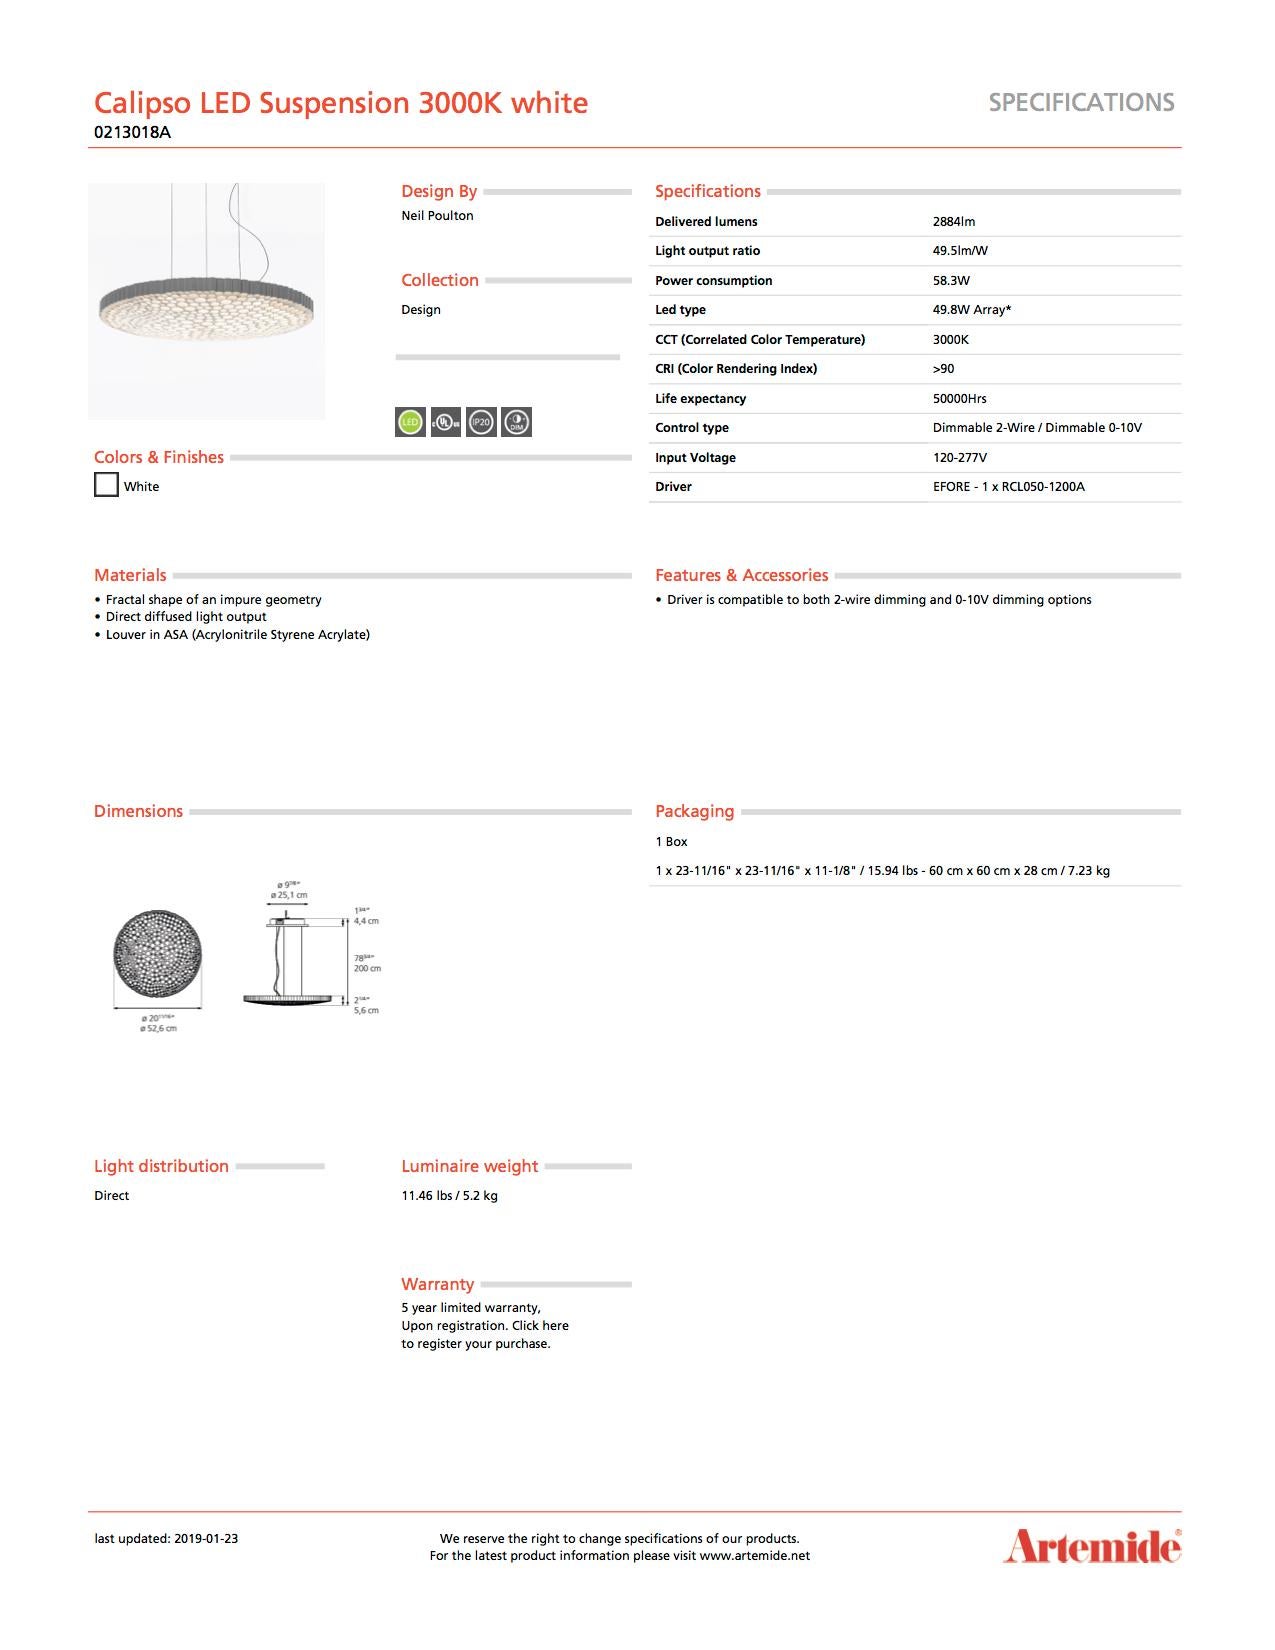 Italian Artemide Calipso 3000K LED Suspension Light in White For Sale